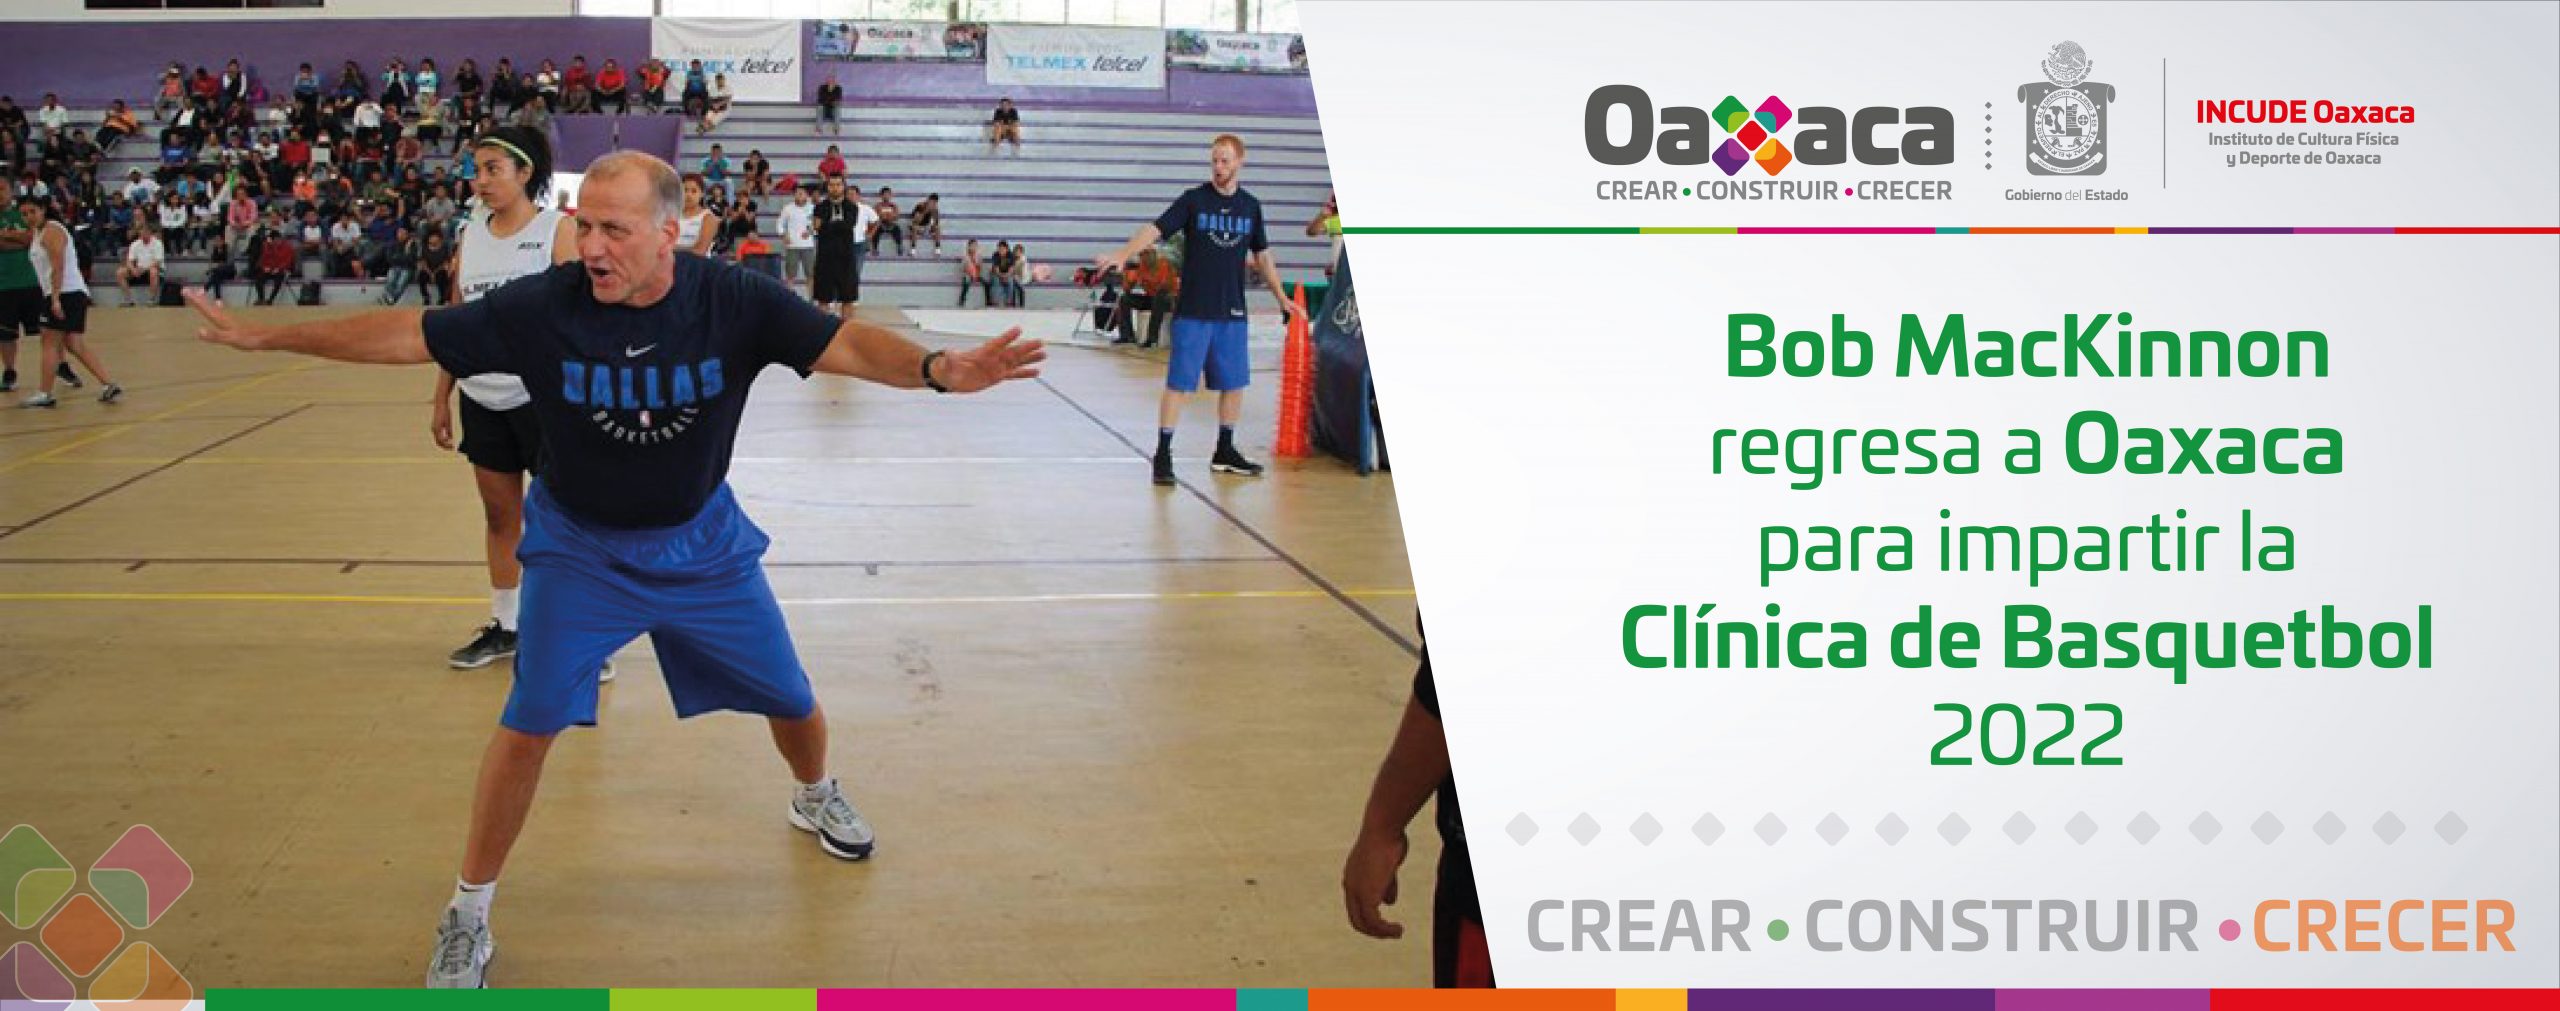 Bob MacKinnon regresa a Oaxaca para impartir la Clínica de Basquetbol 2022